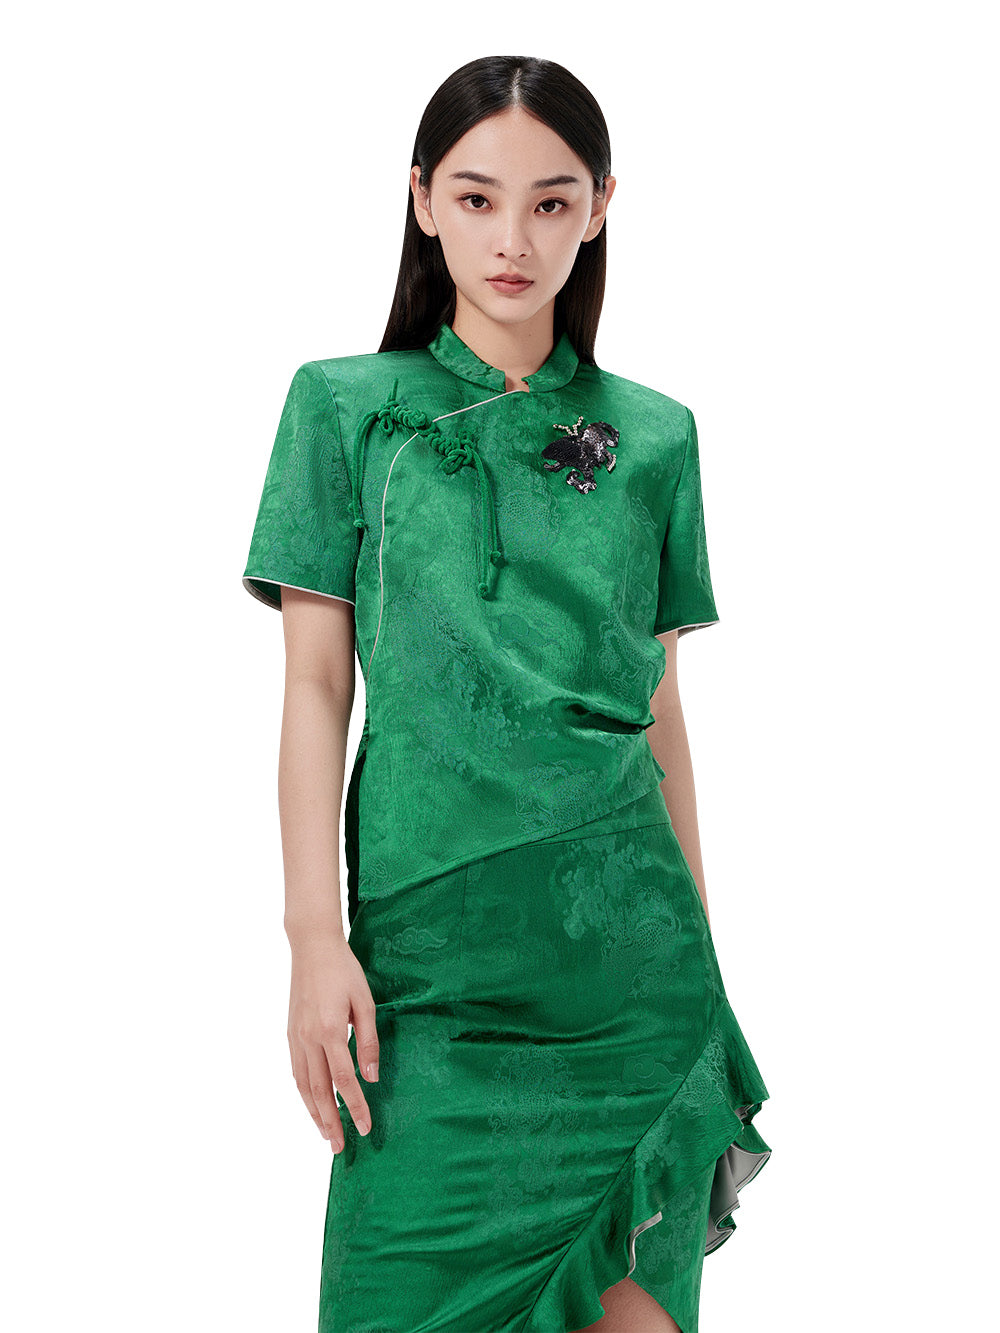 MUKZIN Green Chinese Button Design Short T-shirt